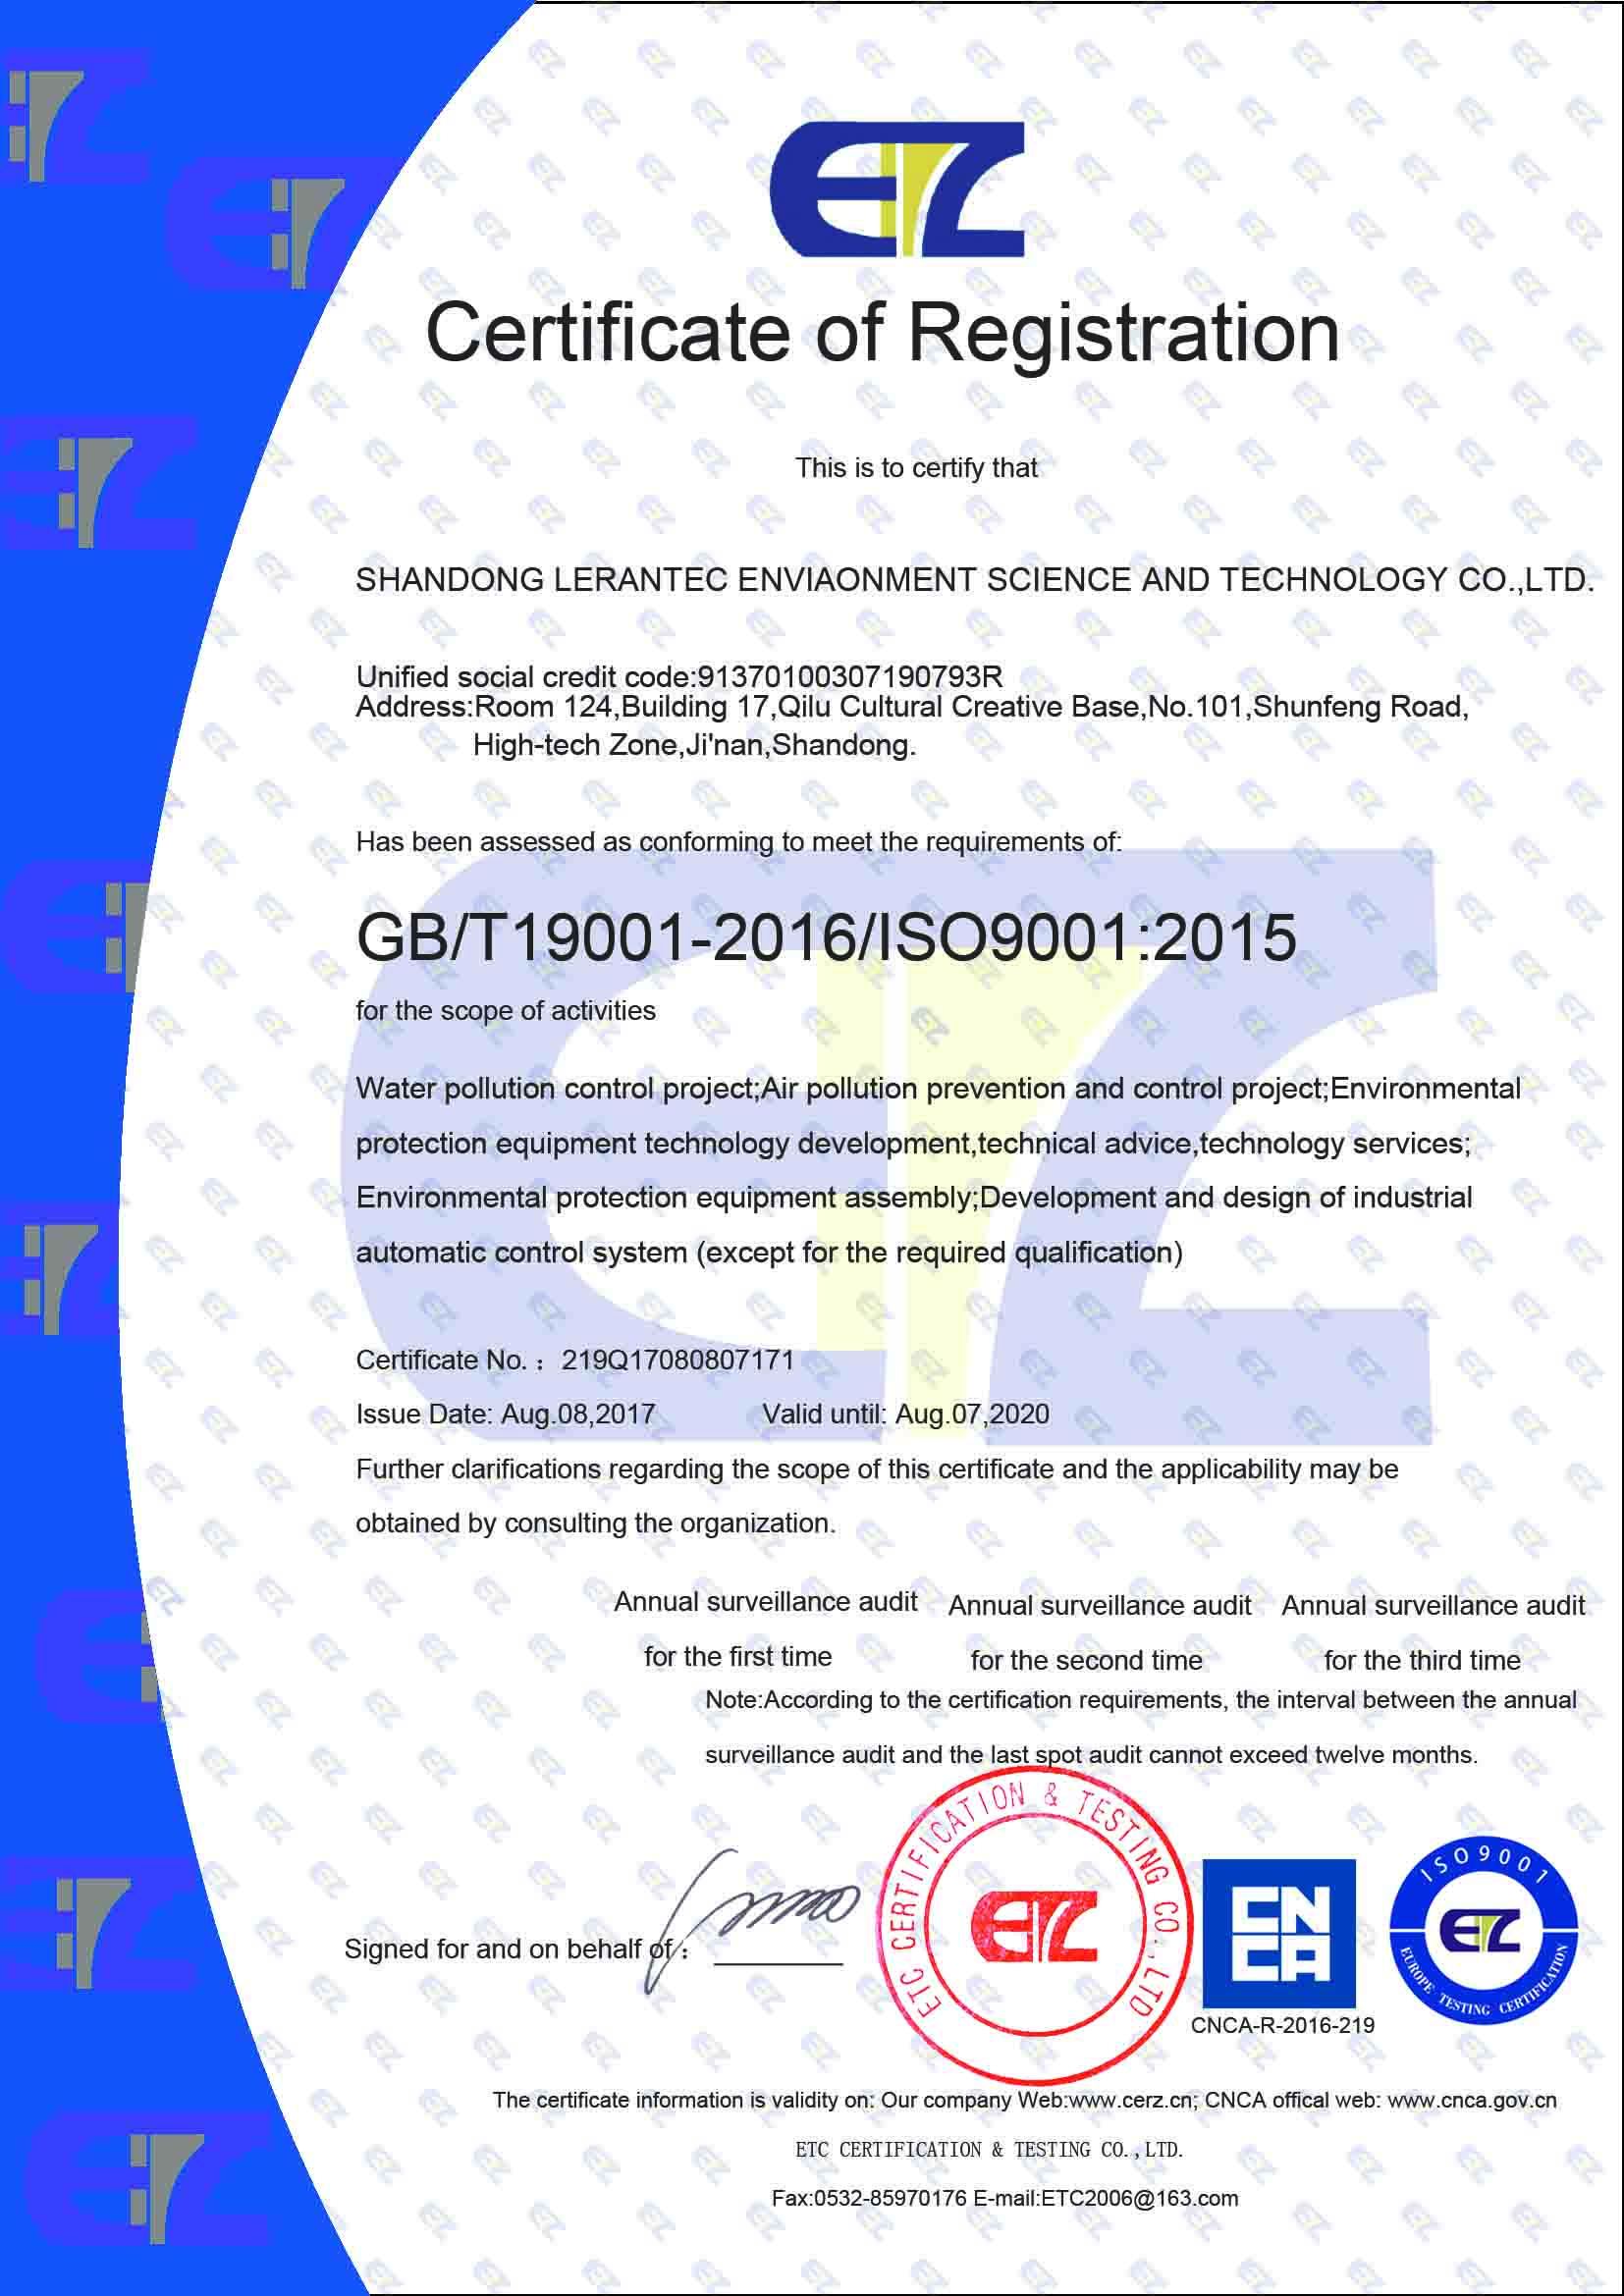 质量管理体系认证证书-英